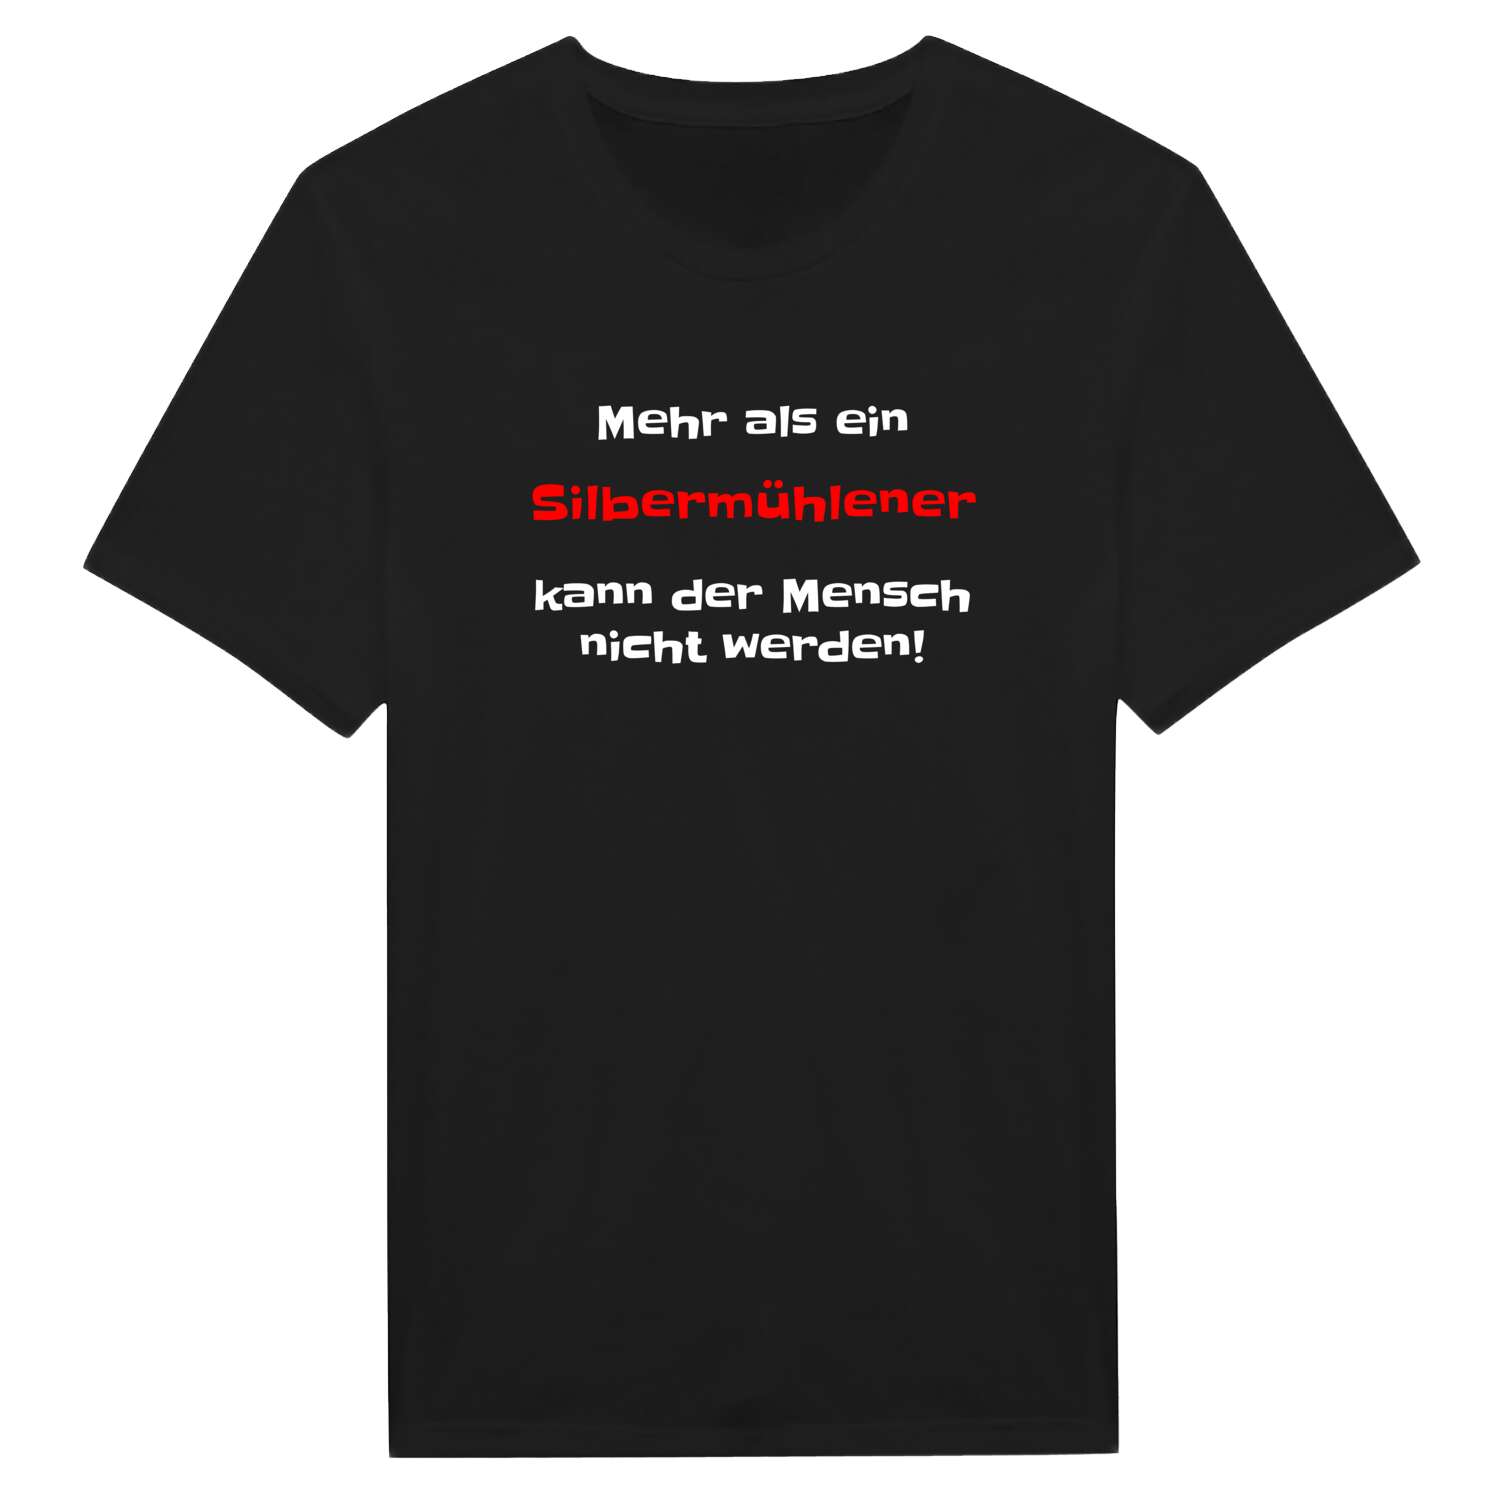 Silbermühle T-Shirt »Mehr als ein«